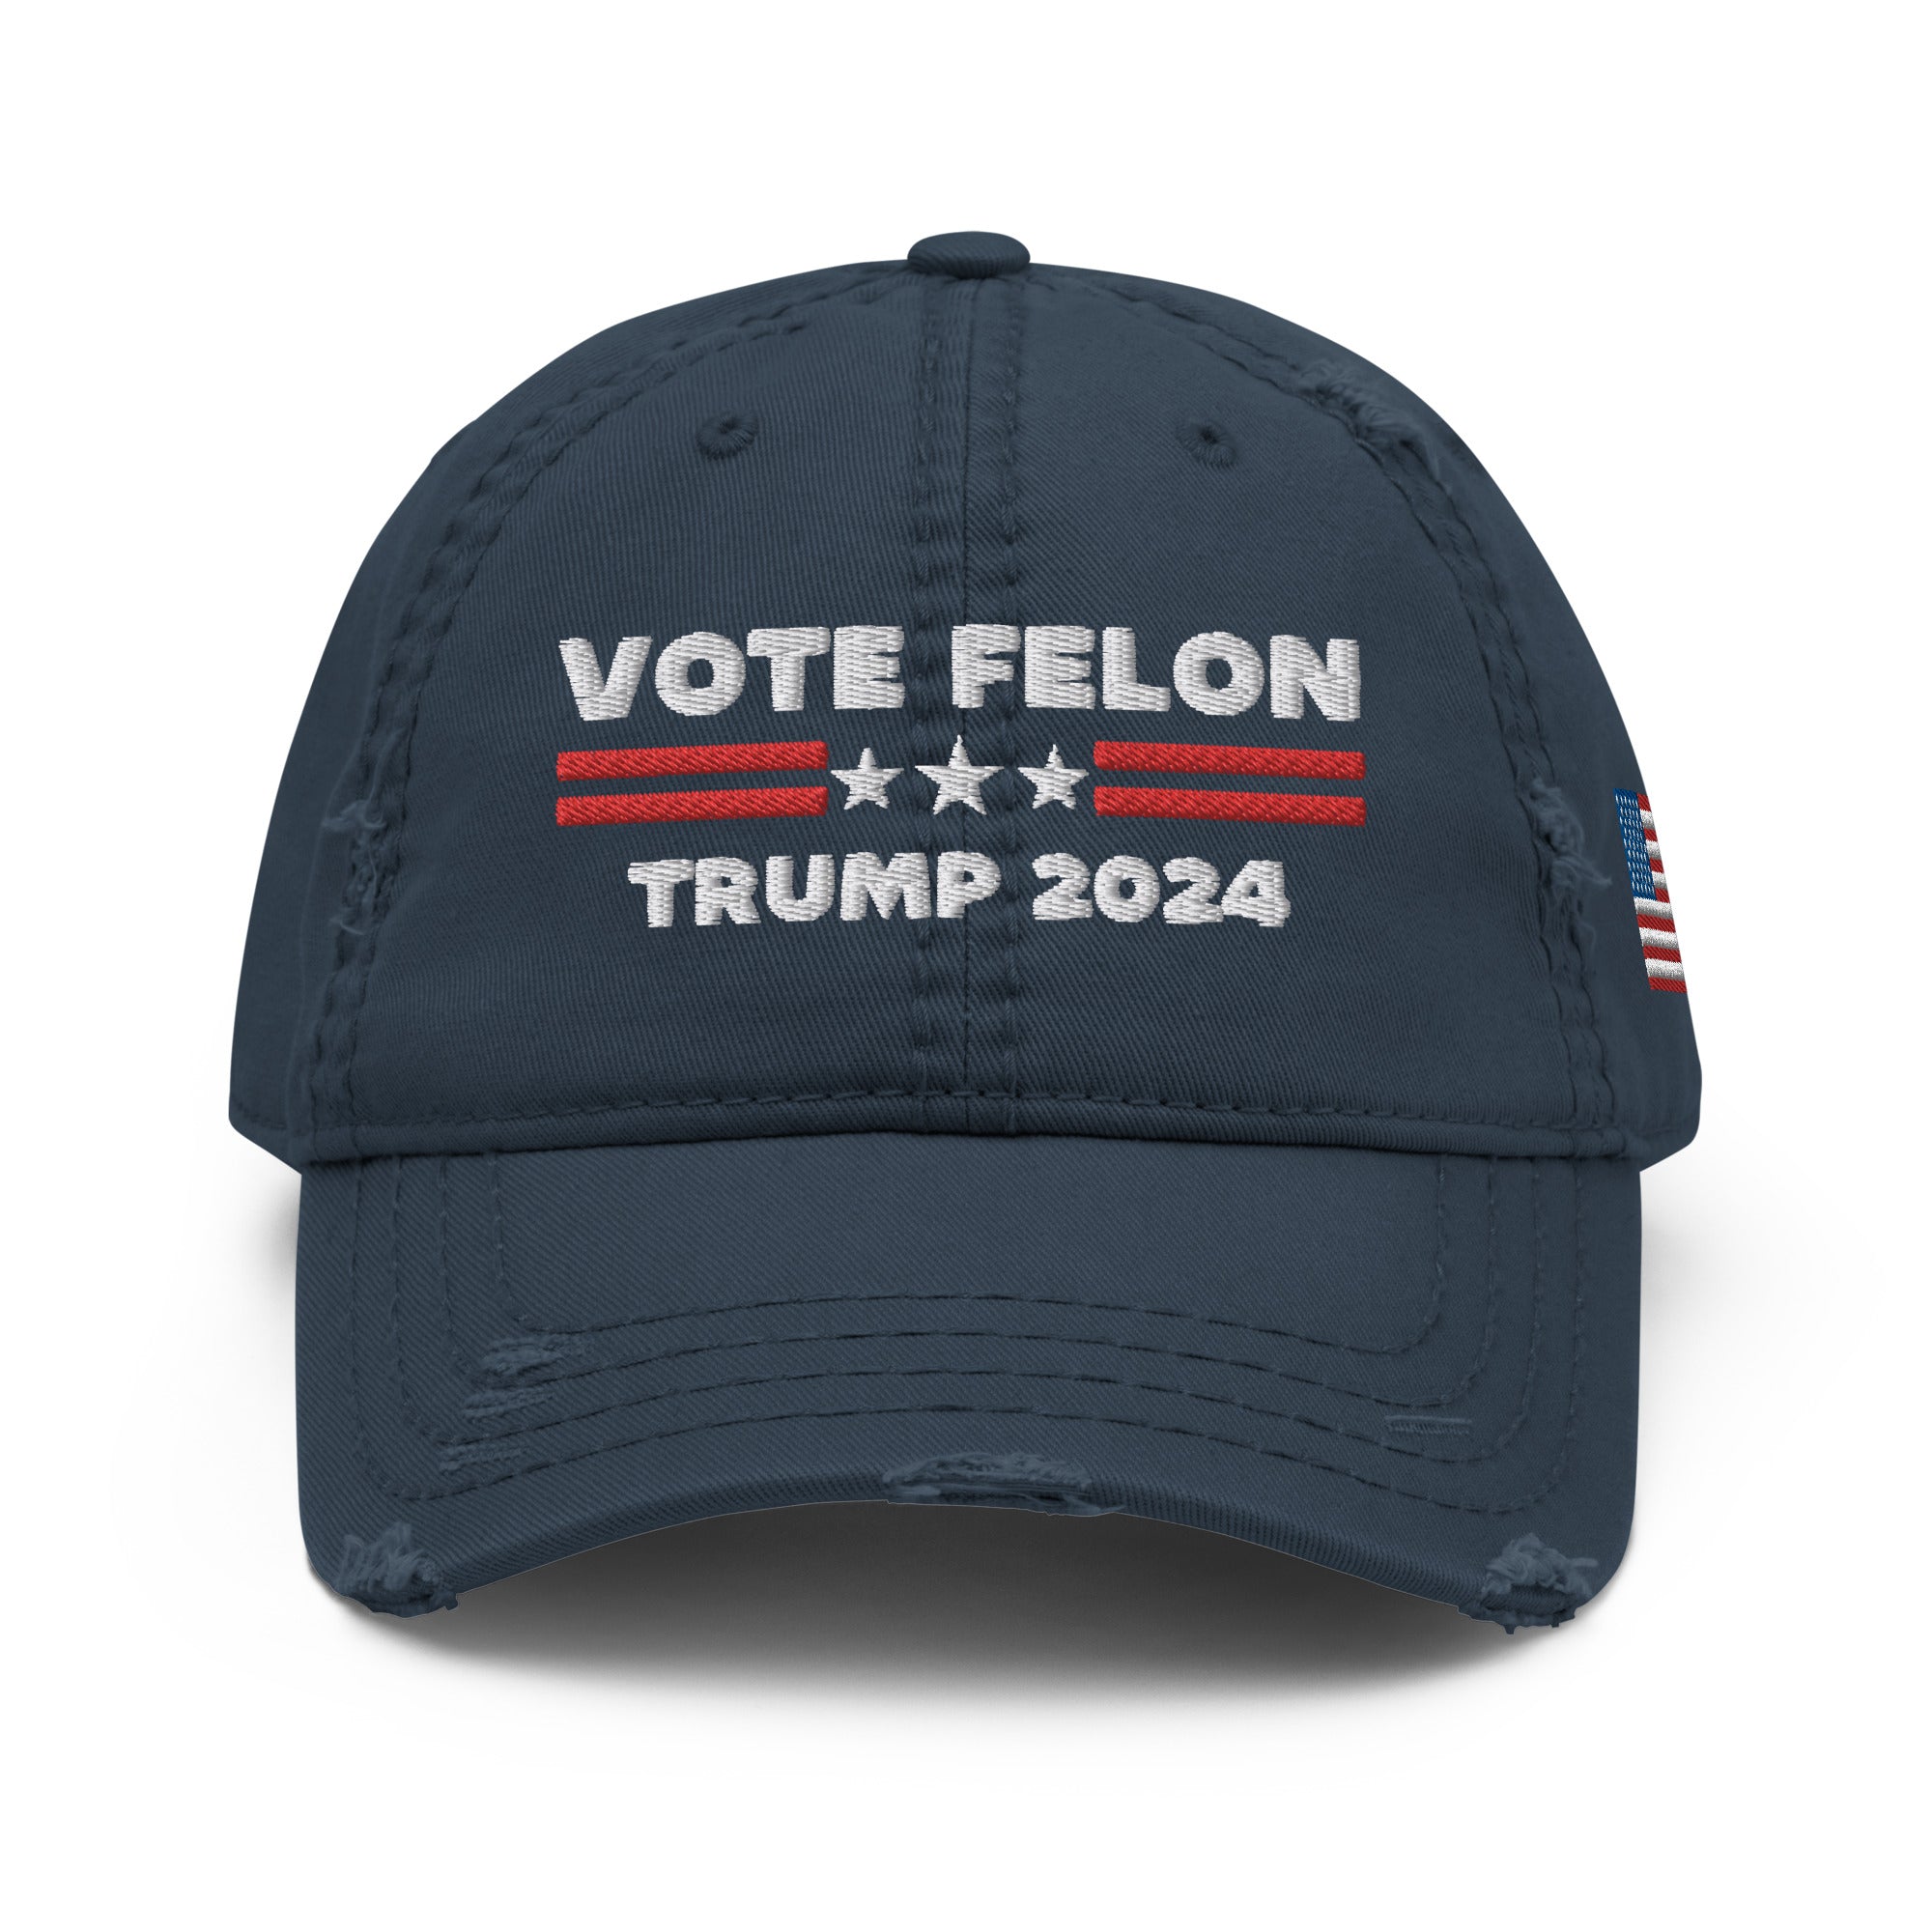 Vote Felon 2024 Papamütze, verurteilter Präsident, Trump 2024 Mütze, Republikaner Geschenke, Wahlmütze, Republikaner Mützen, Politische Mütze, Lustige Mützen